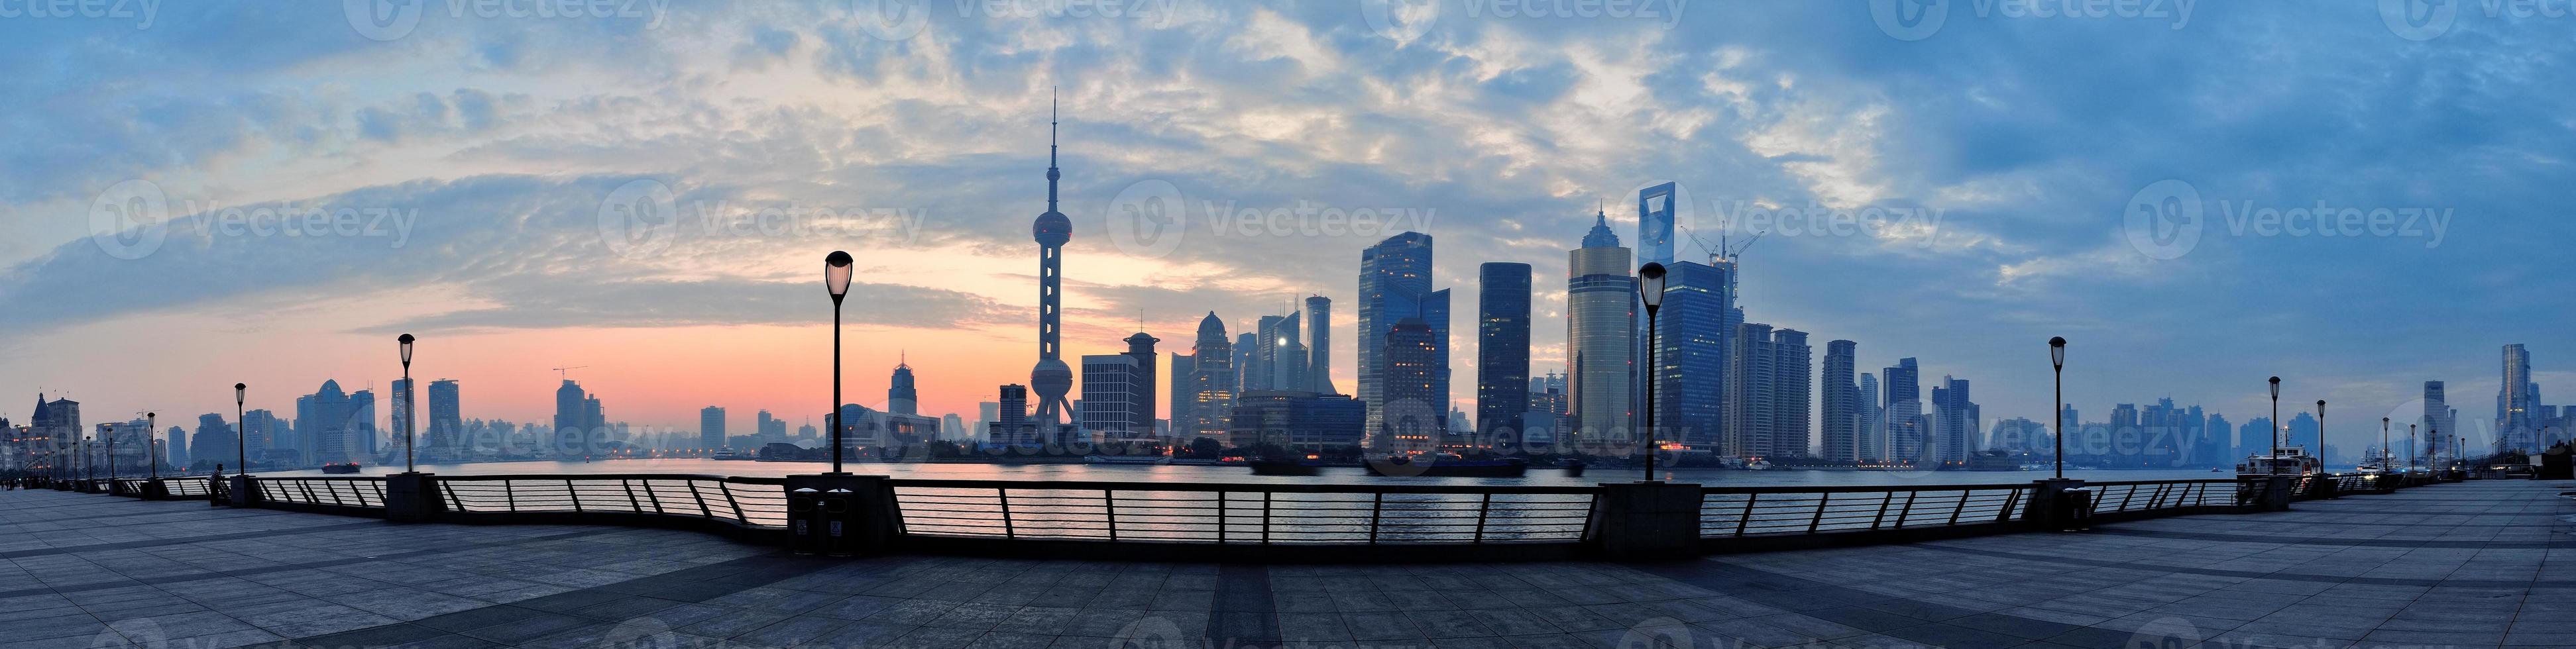 vista de la mañana de shanghai foto